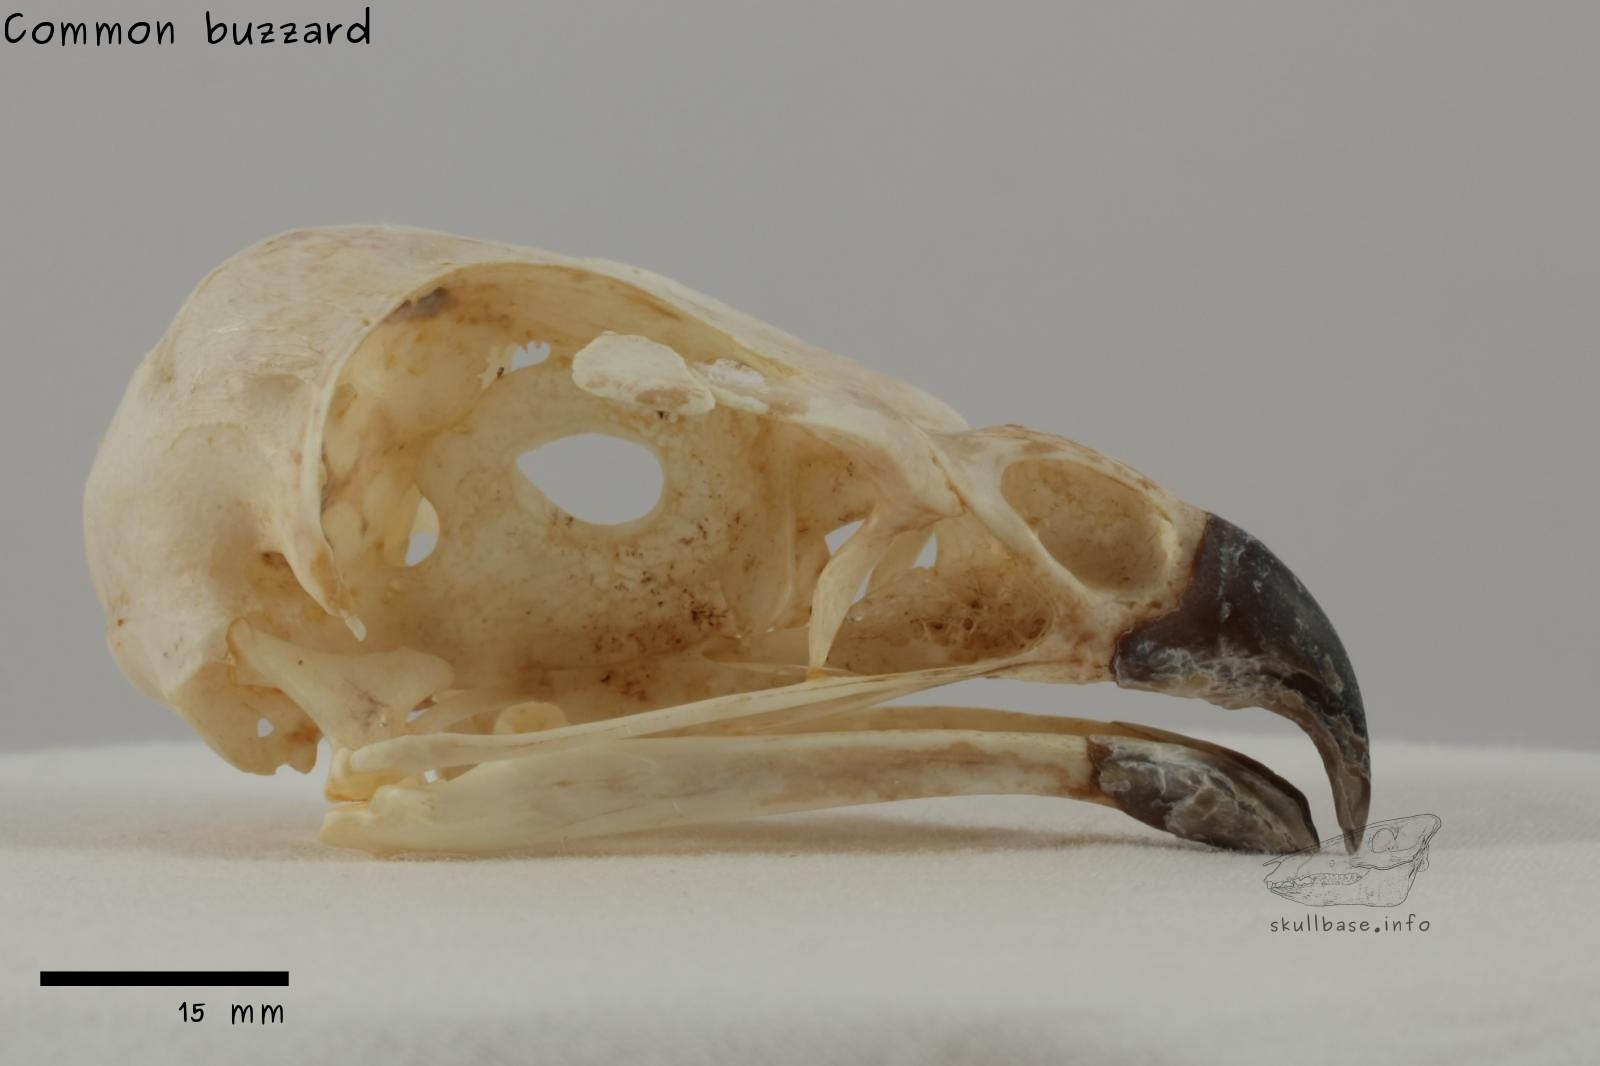 Common buzzard (Buteo buteo) skull lateral view